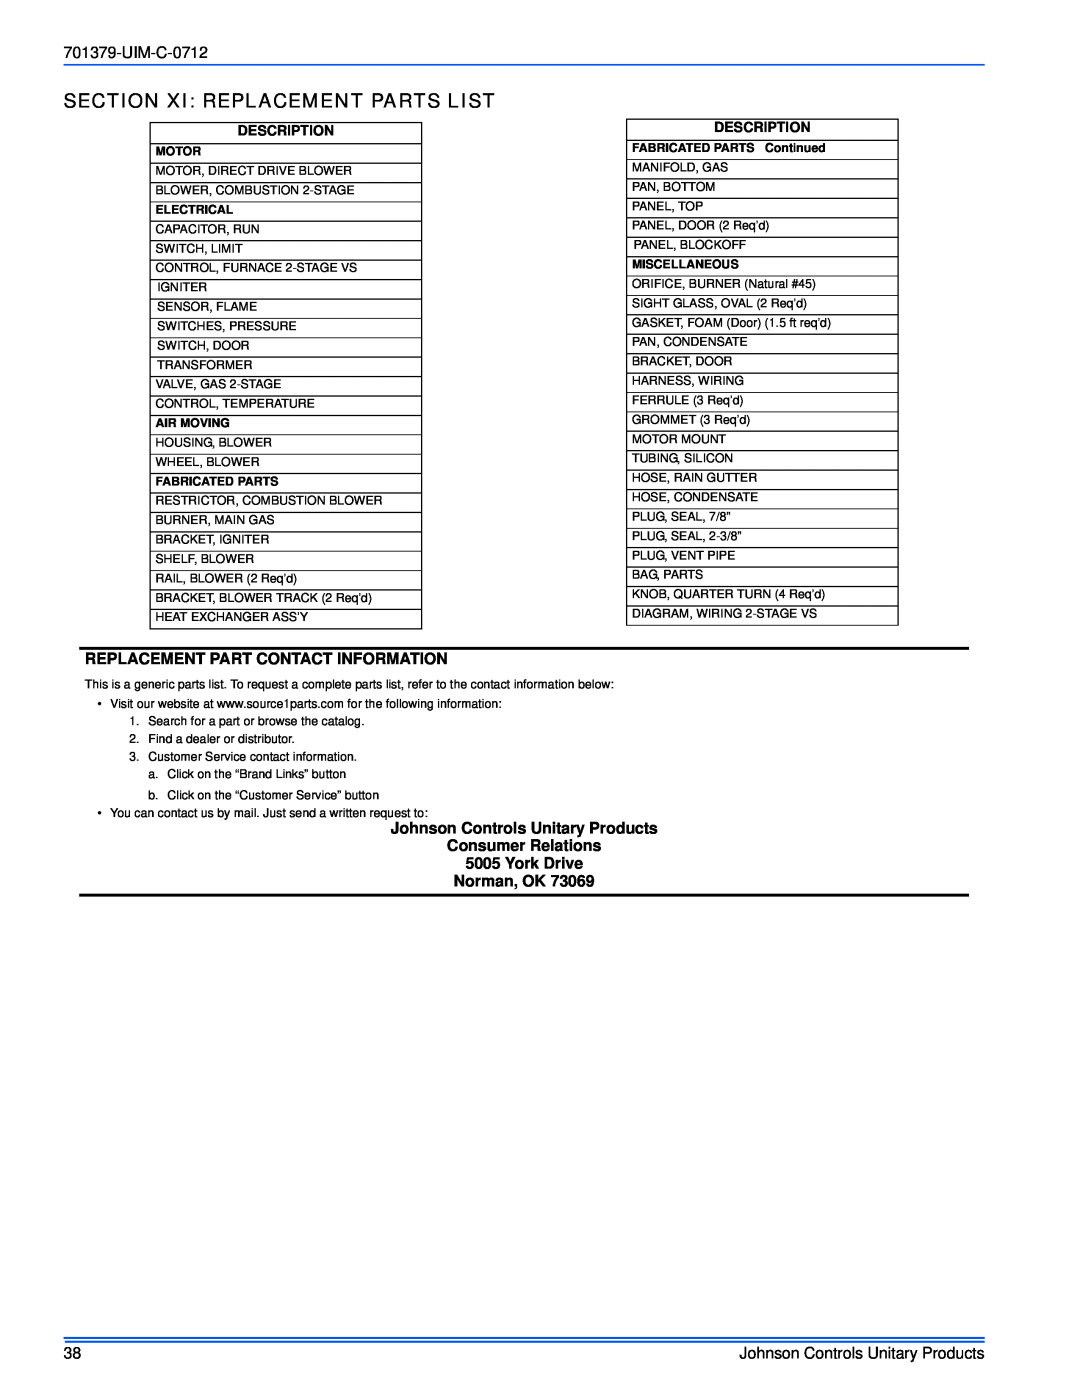 Johnson Controls TM9V*MP Section Xi Replacement Parts List, UIM-C-0712, Replacement Part Contact Information, Description 